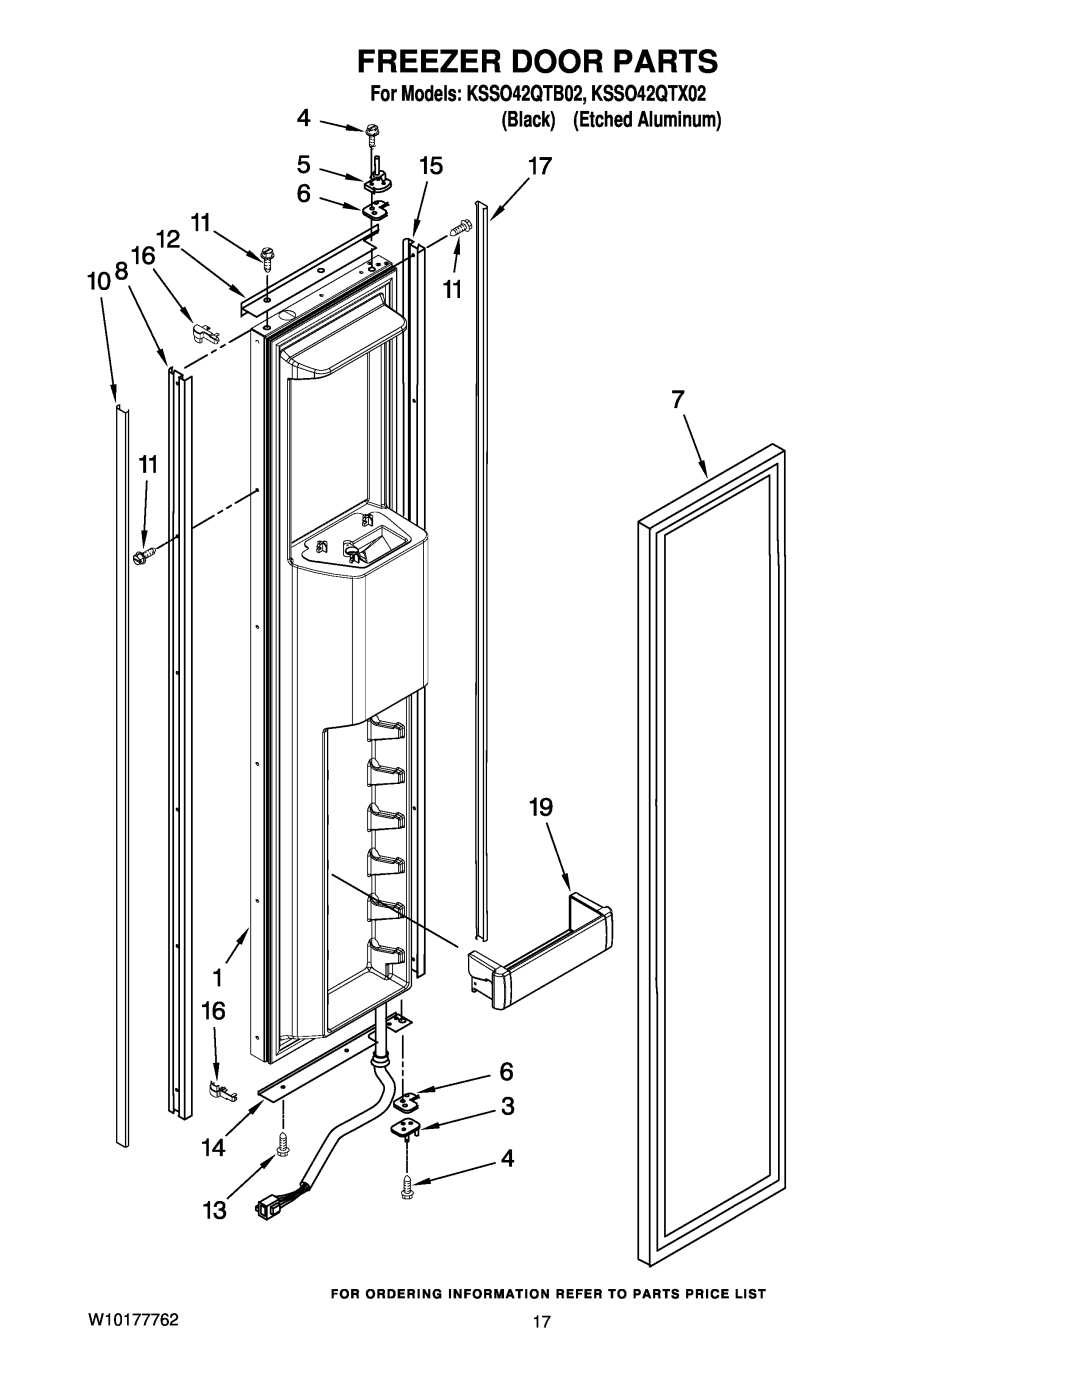 KitchenAid manual Freezer Door Parts, W10177762, For Models KSSO42QTB02, KSSO42QTX02 Black Etched Aluminum 